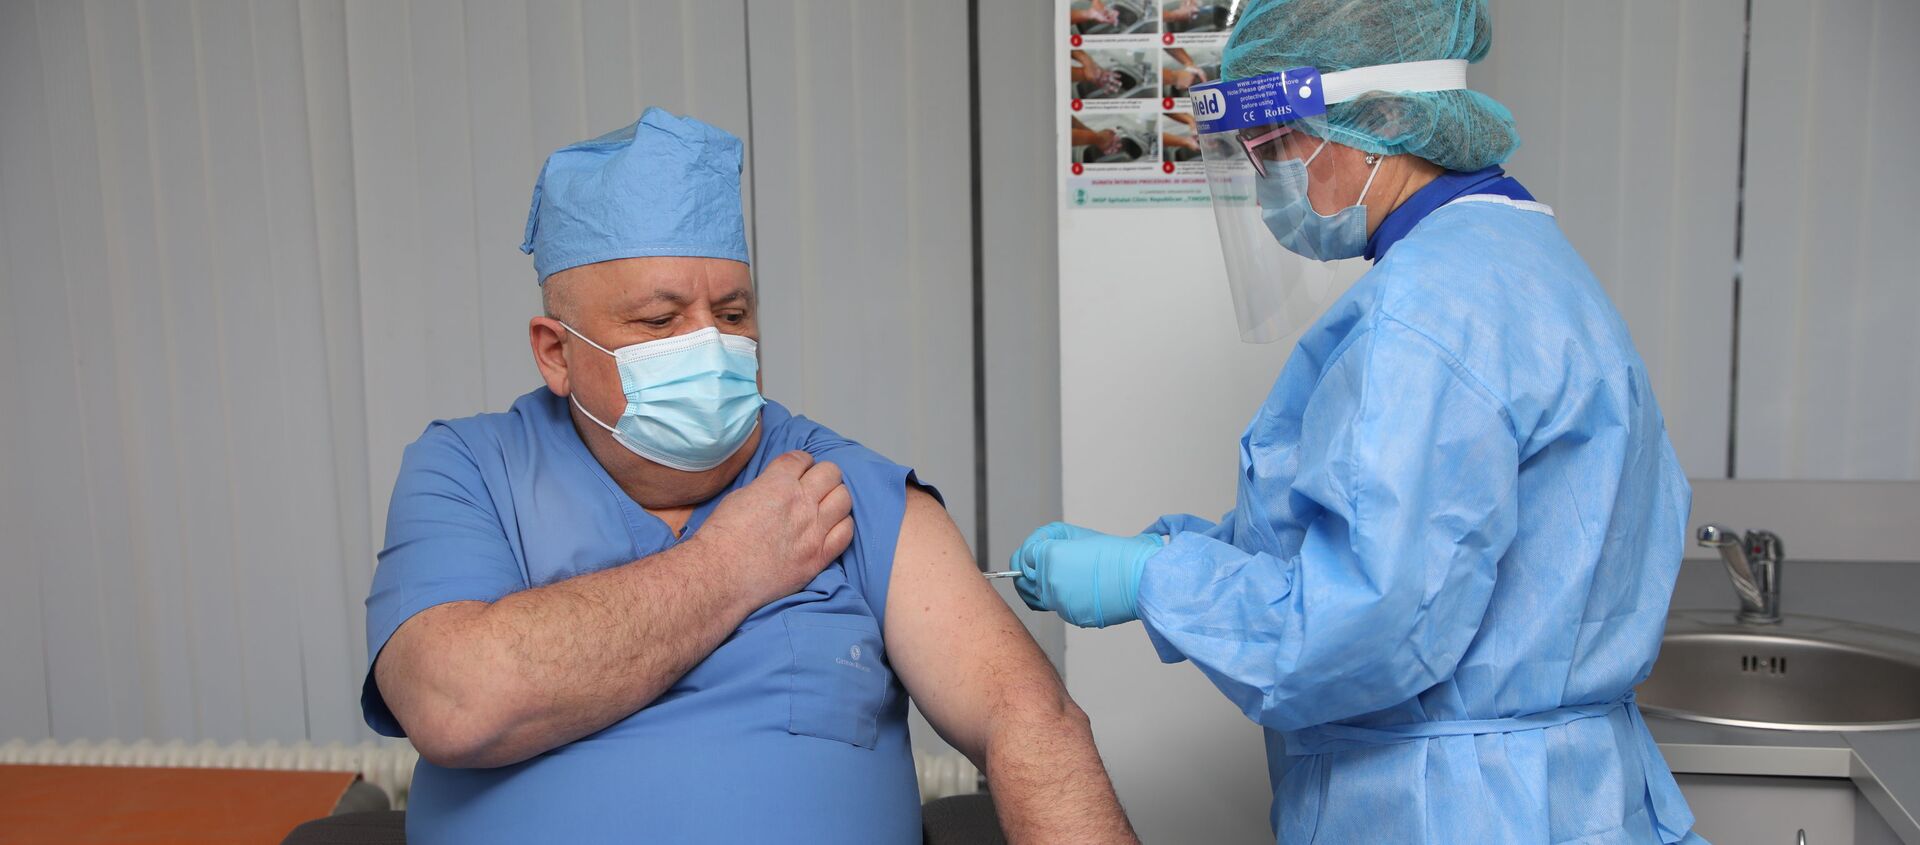 В Молдове стартовала вакцинация врачей от коронавируса - Sputnik Молдова, 1920, 02.03.2021